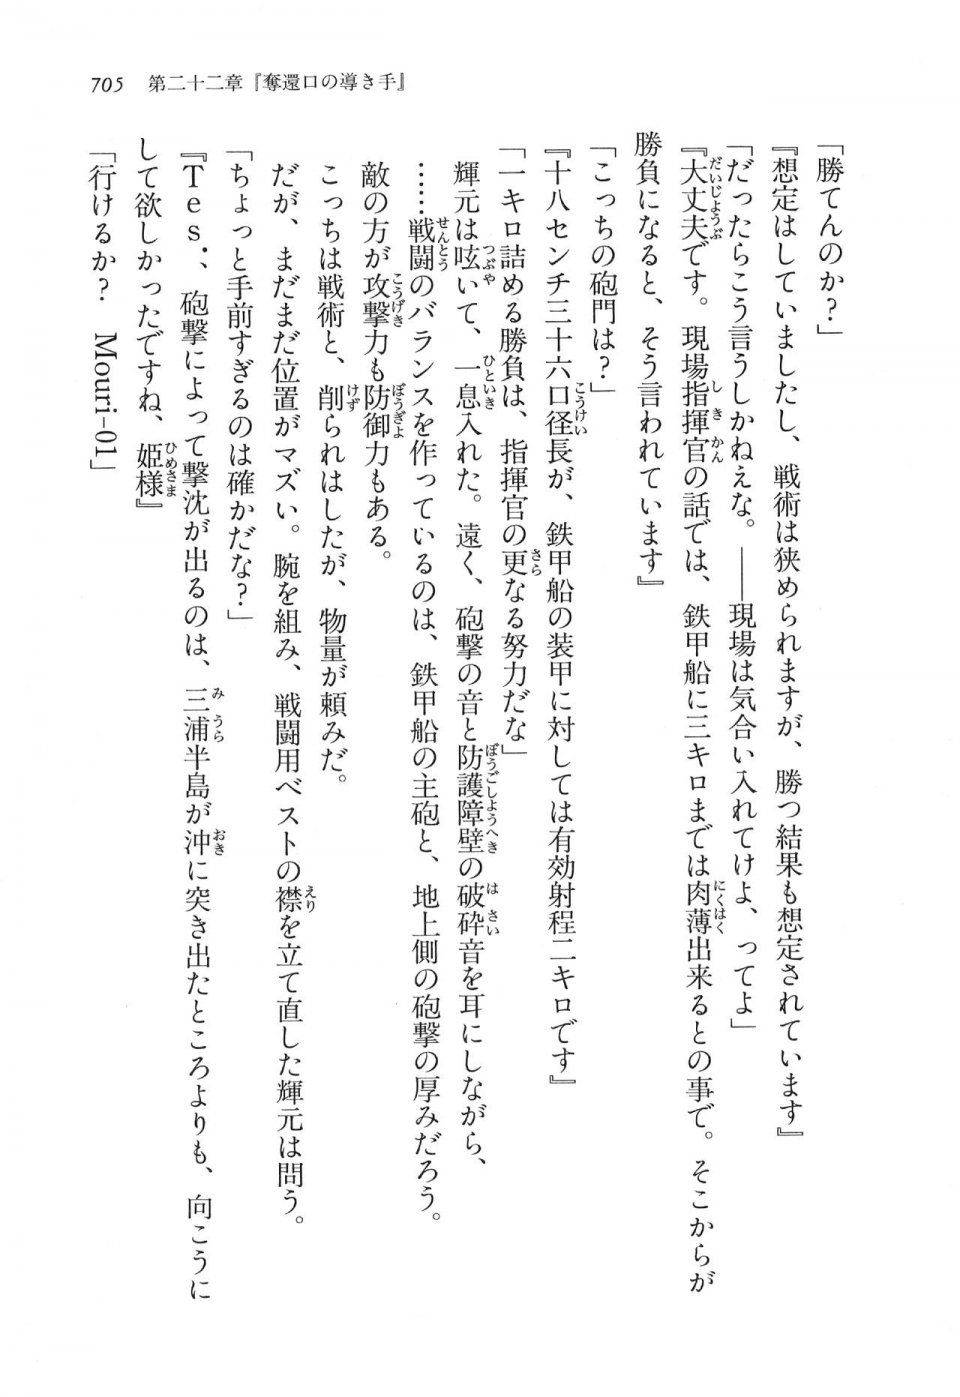 Kyoukai Senjou no Horizon LN Vol 16(7A) - Photo #705